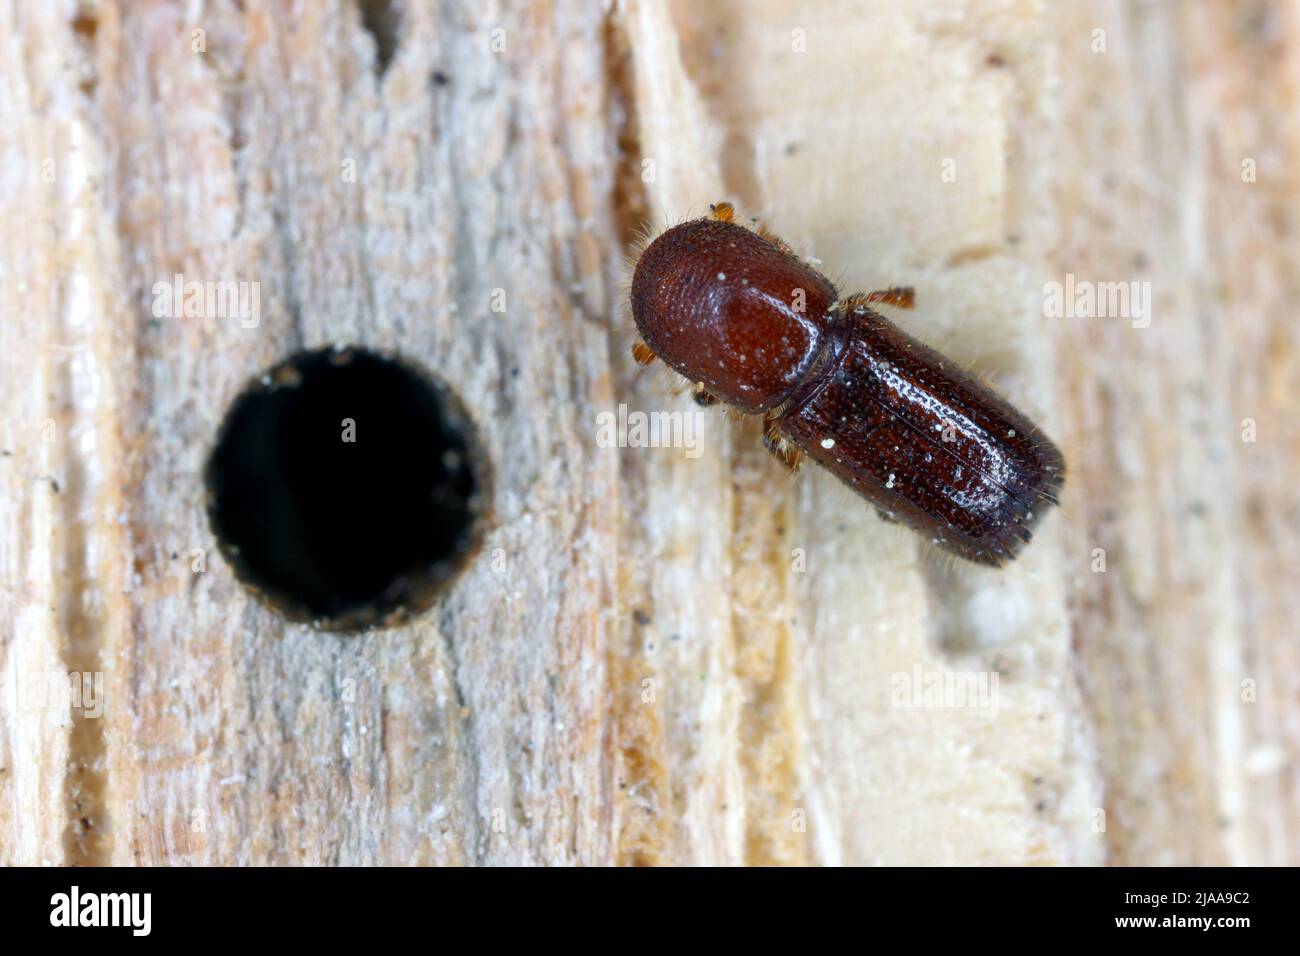 Ambrosia beetle, Xyleborus monographus on wood. High macro magnification. Stock Photo